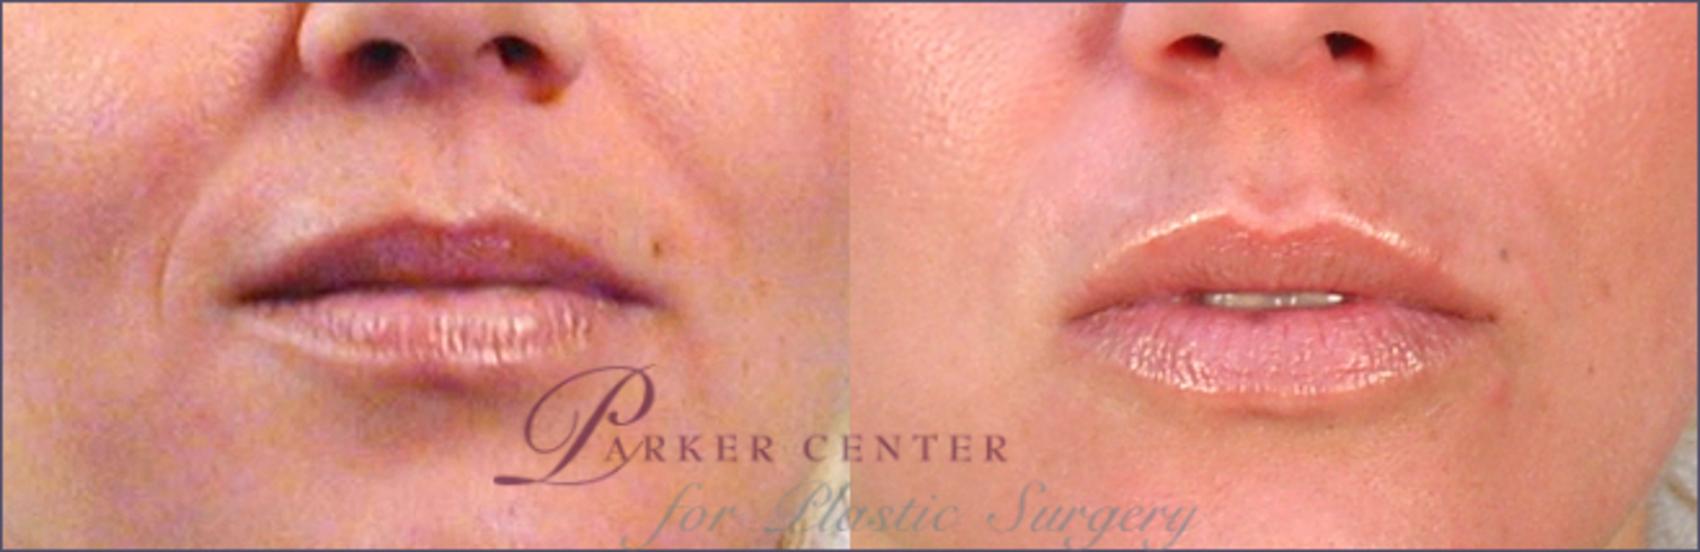 Lip Enhancement Case 259 Before & After View #1 | Paramus, NJ | Parker Center for Plastic Surgery